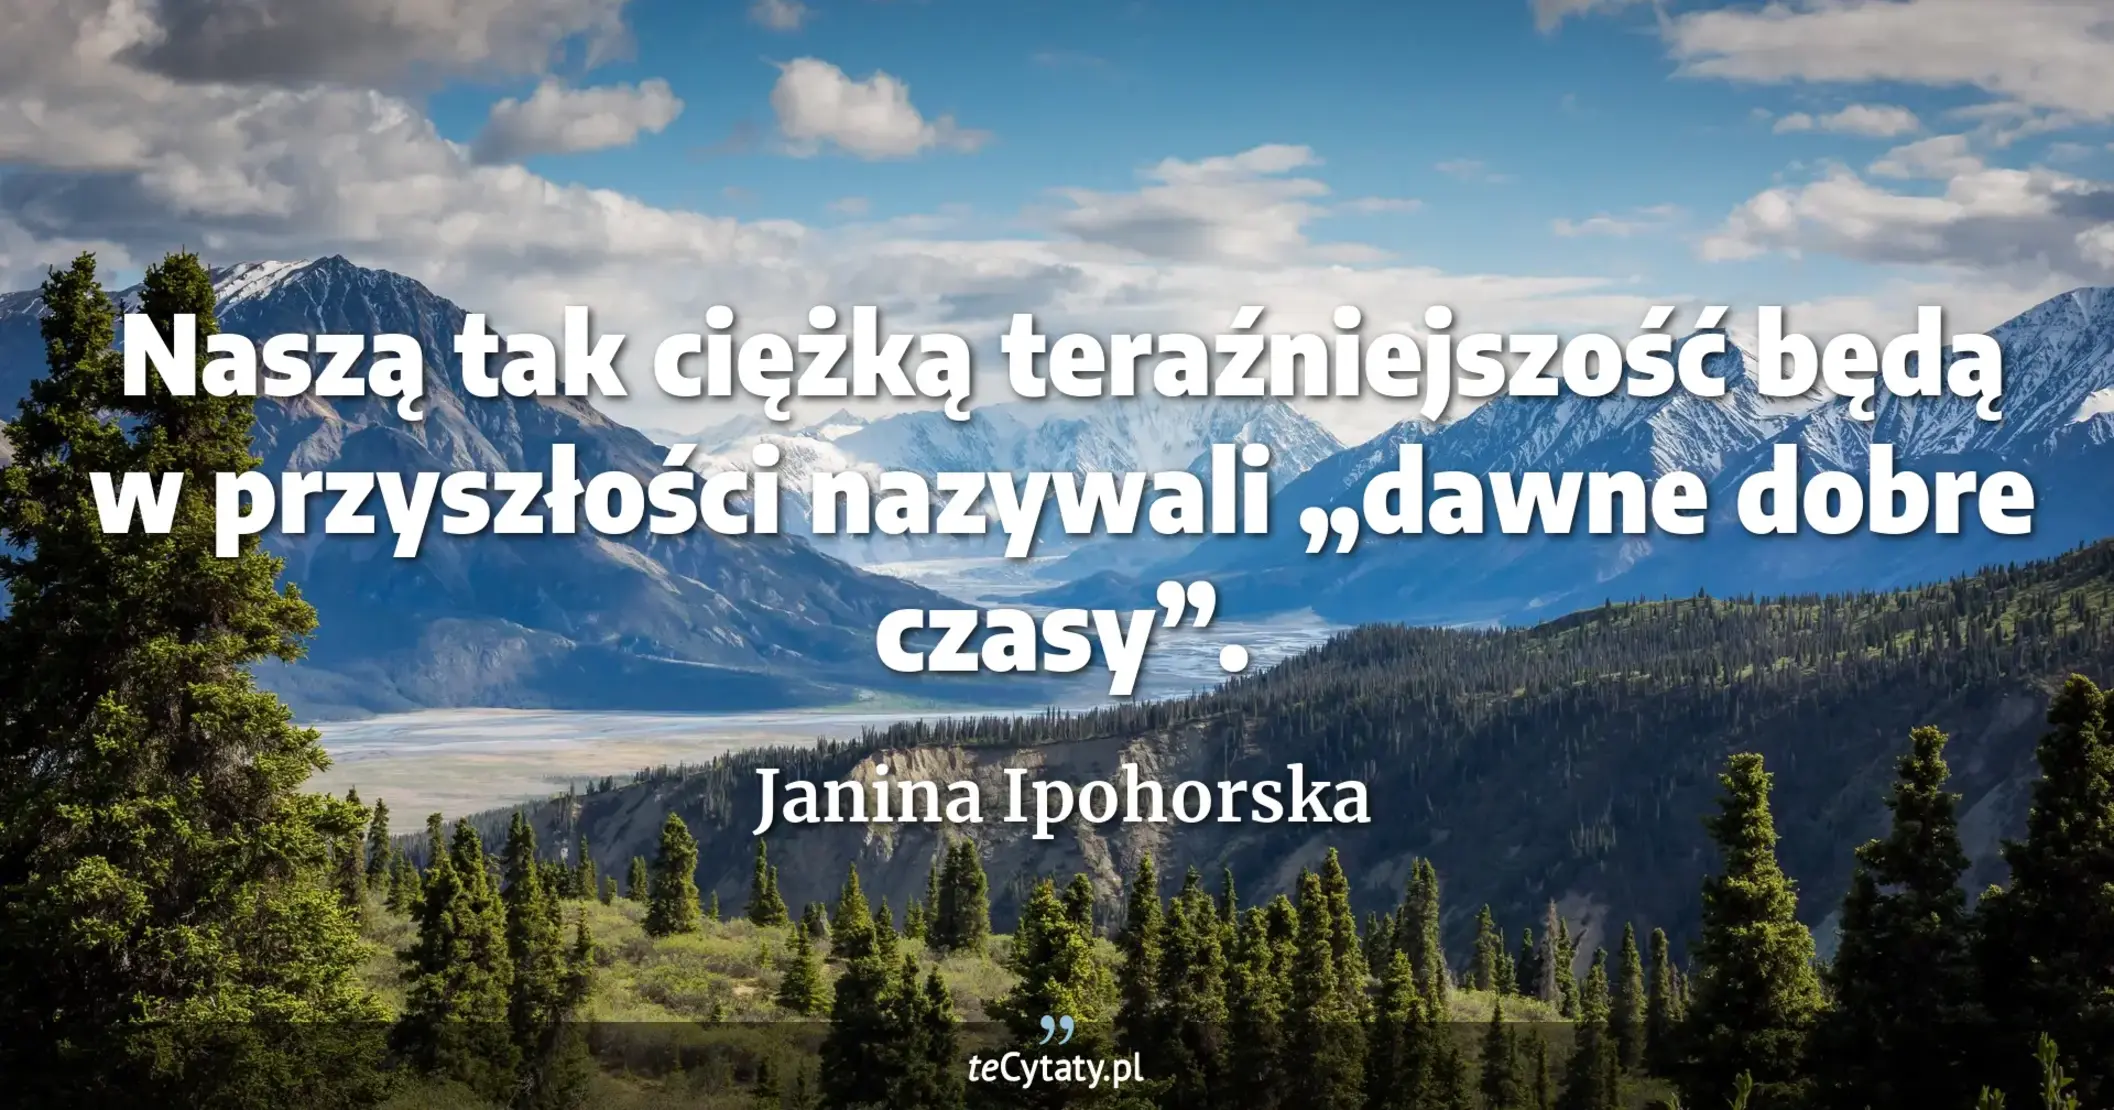 Naszą tak ciężką teraźniejszość będą w przyszłości nazywali „dawne dobre czasy”. - Janina Ipohorska